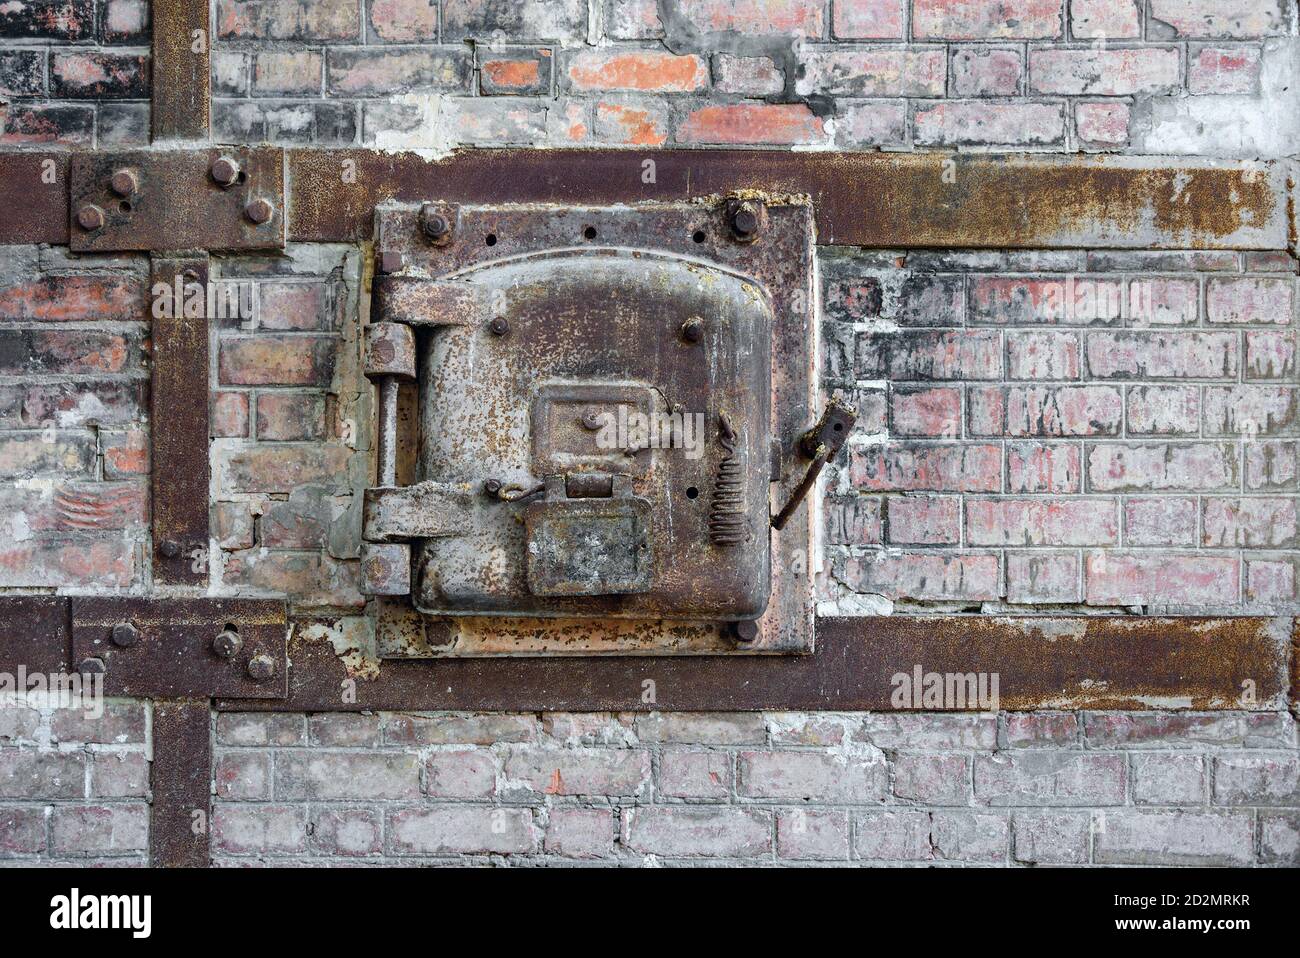 Vieux portillon en métal rouillé d'un four en brique rouge dans une usine abandonnée. Porte d'accès en métal rouillé avec cadre en métal boulonné à l'ancien mur en brique rouge. Banque D'Images